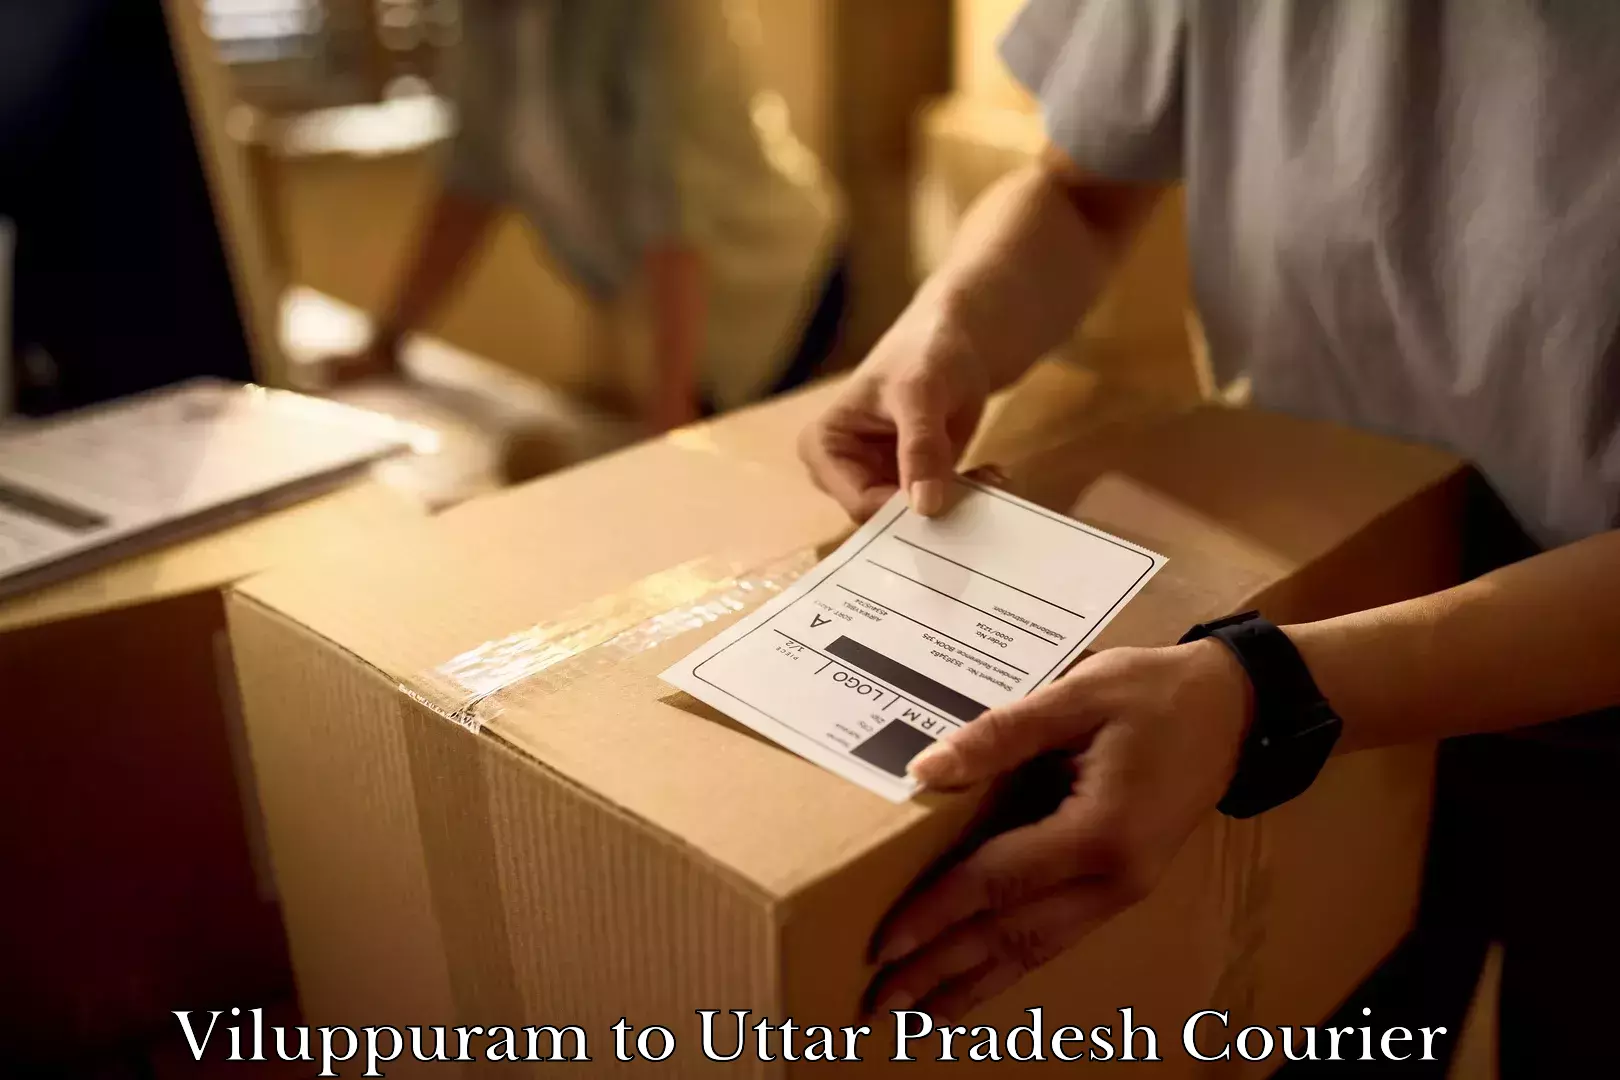 Furniture transport specialists Viluppuram to Uttar Pradesh